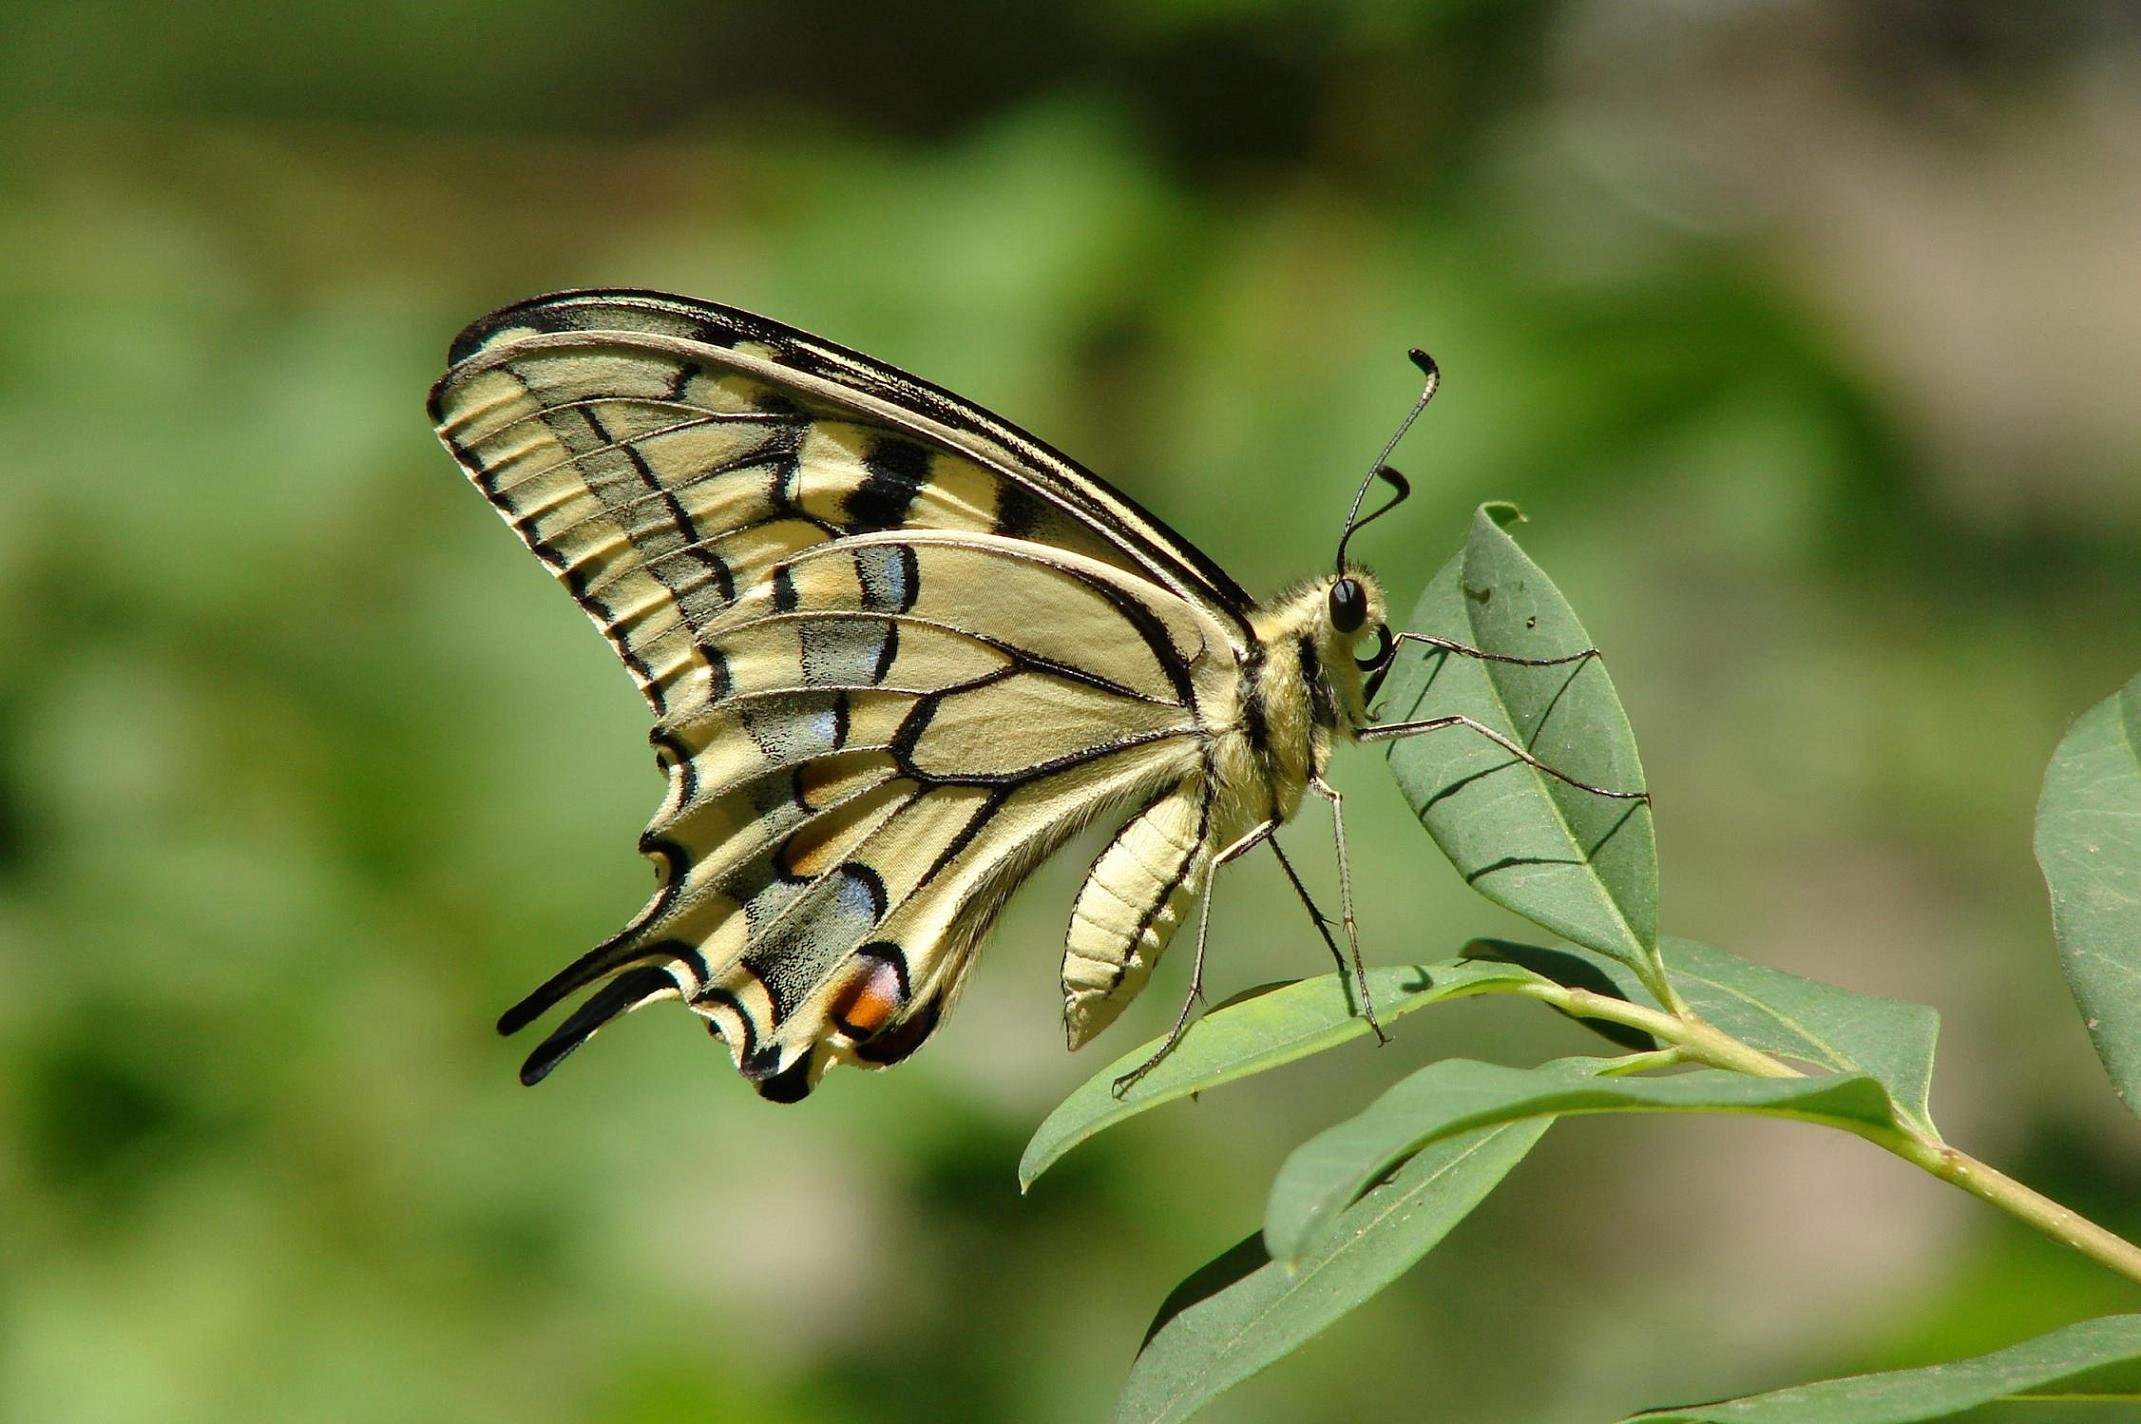 Класс насекомые бабочки. Хвостатая Императорская бабочка. Хвостатый Император бабочка. Императорский мотылек бабочка. Бабочка с хвостиками на крыльях.